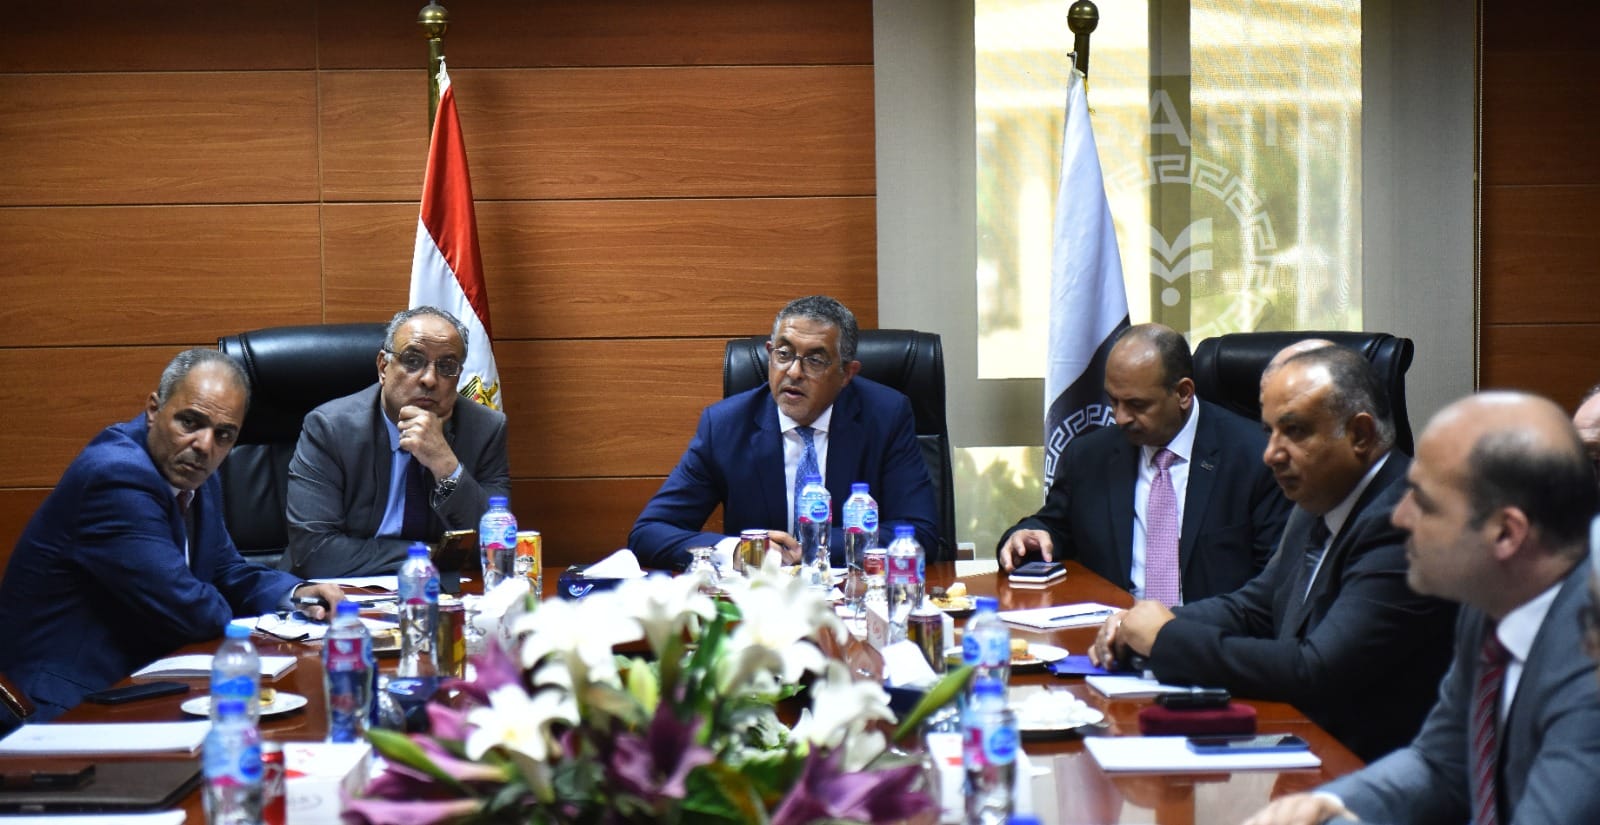 الرئيس التنفيذي للهيئة العامة للاستثمار والمناطق الحرة يبحث خطط تطوير المنطقة الحرة بالإسكندرية